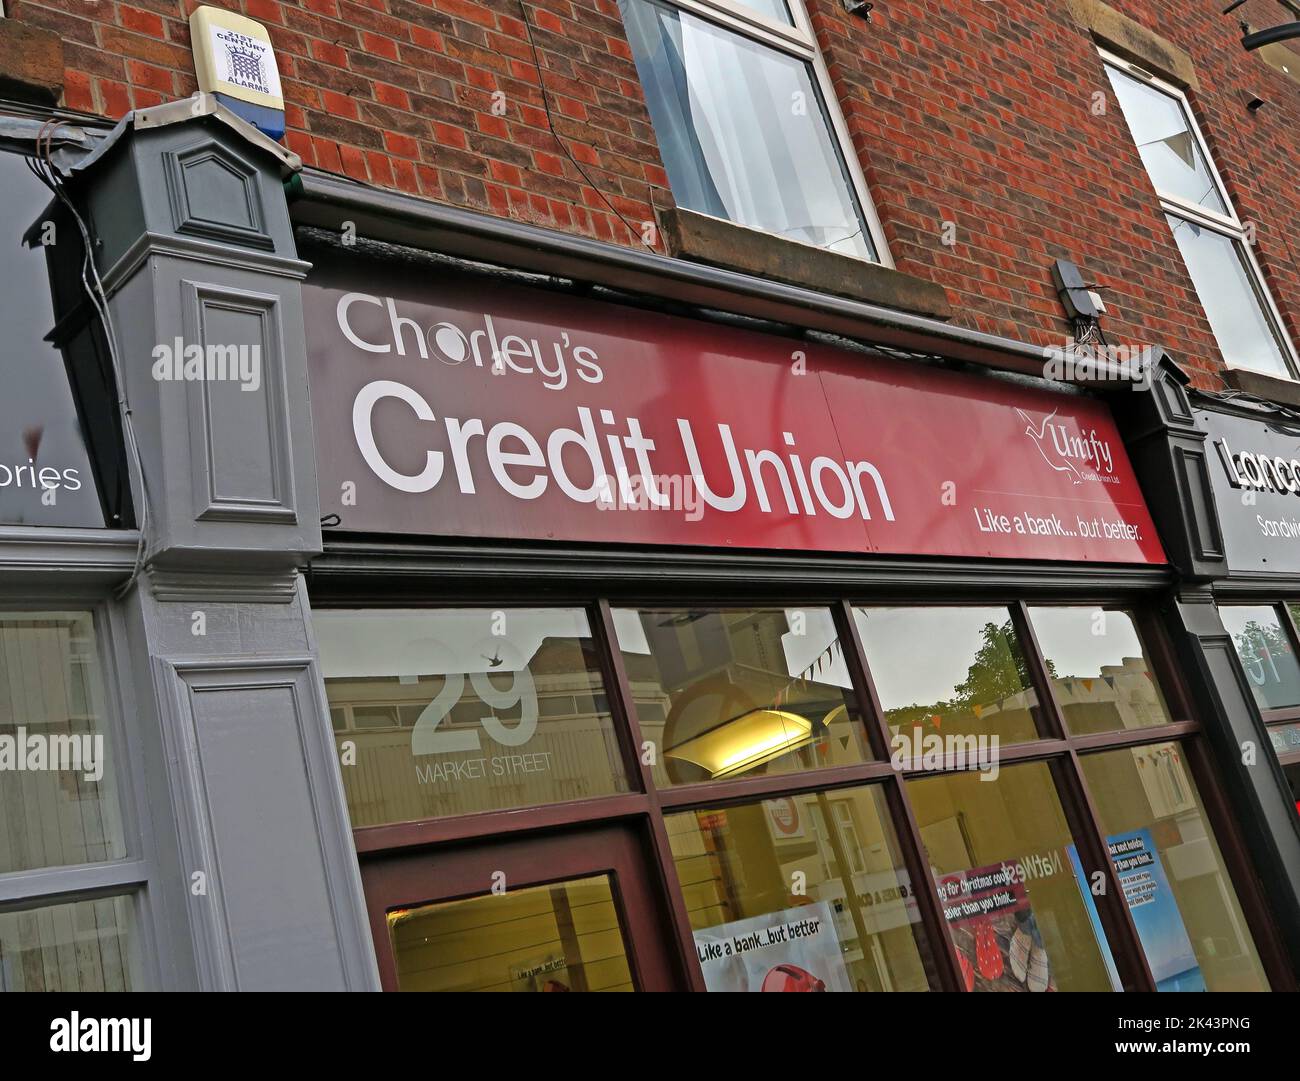 Bureau de la coopérative de crédit à Chorley, Lancashire, Angleterre, aider les pauvres à accéder à l'épargne et à la finance, 29 Market St, Chorley, PR7 2SY Banque D'Images